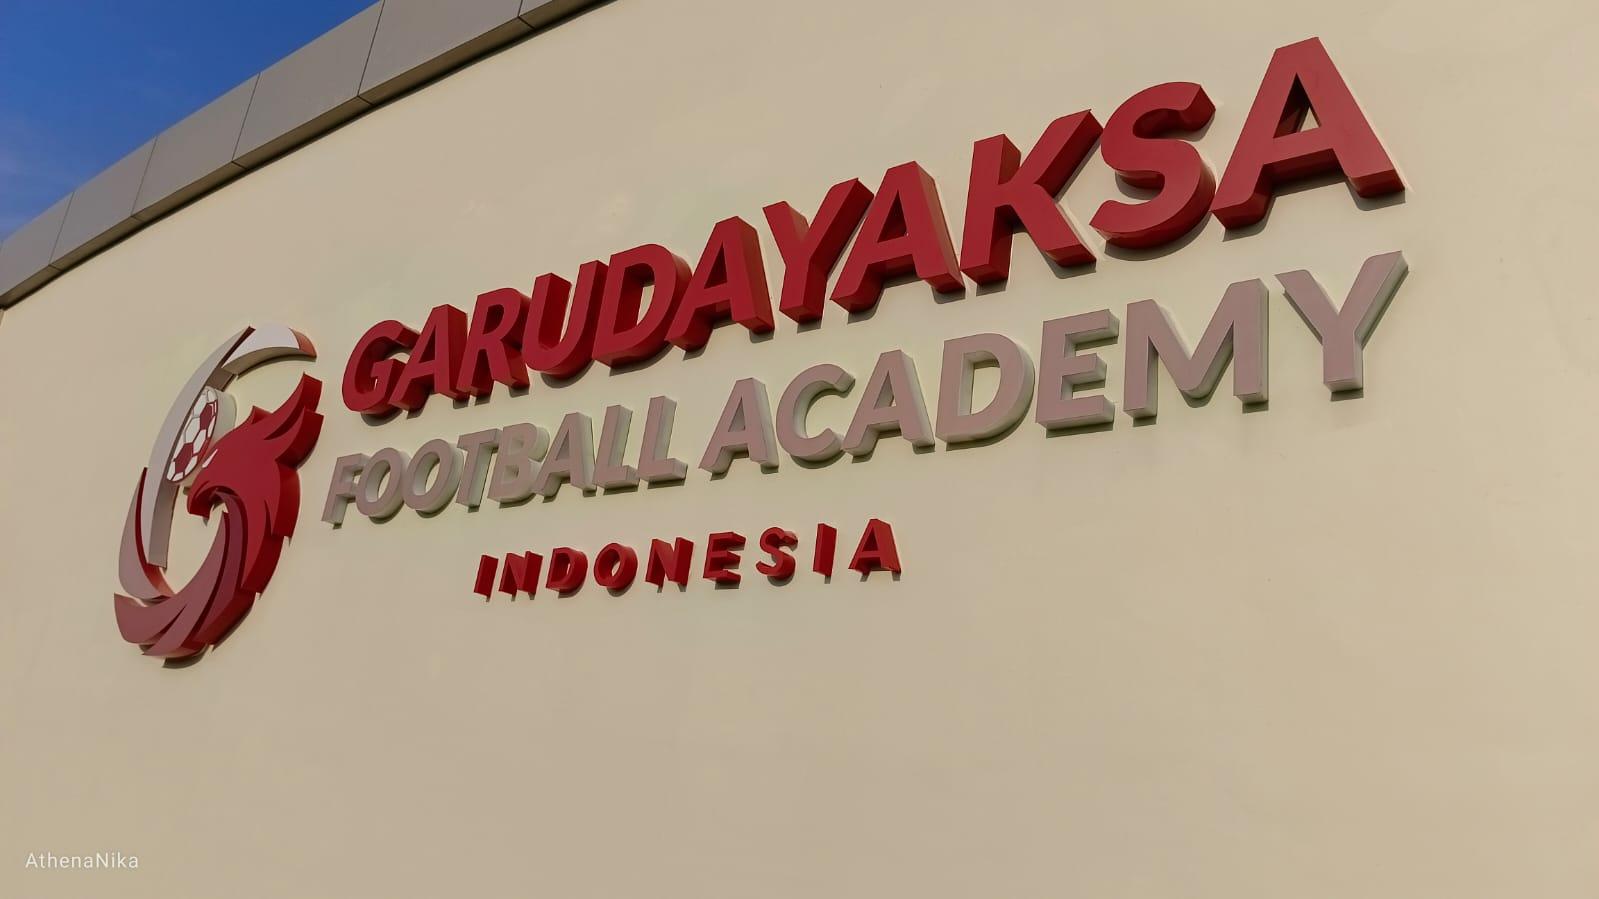 (GALERI FOTO) Kemegahan Kompleks Garudayaksa FA, Investasi Prabowo untuk Sepak bola Indonesia